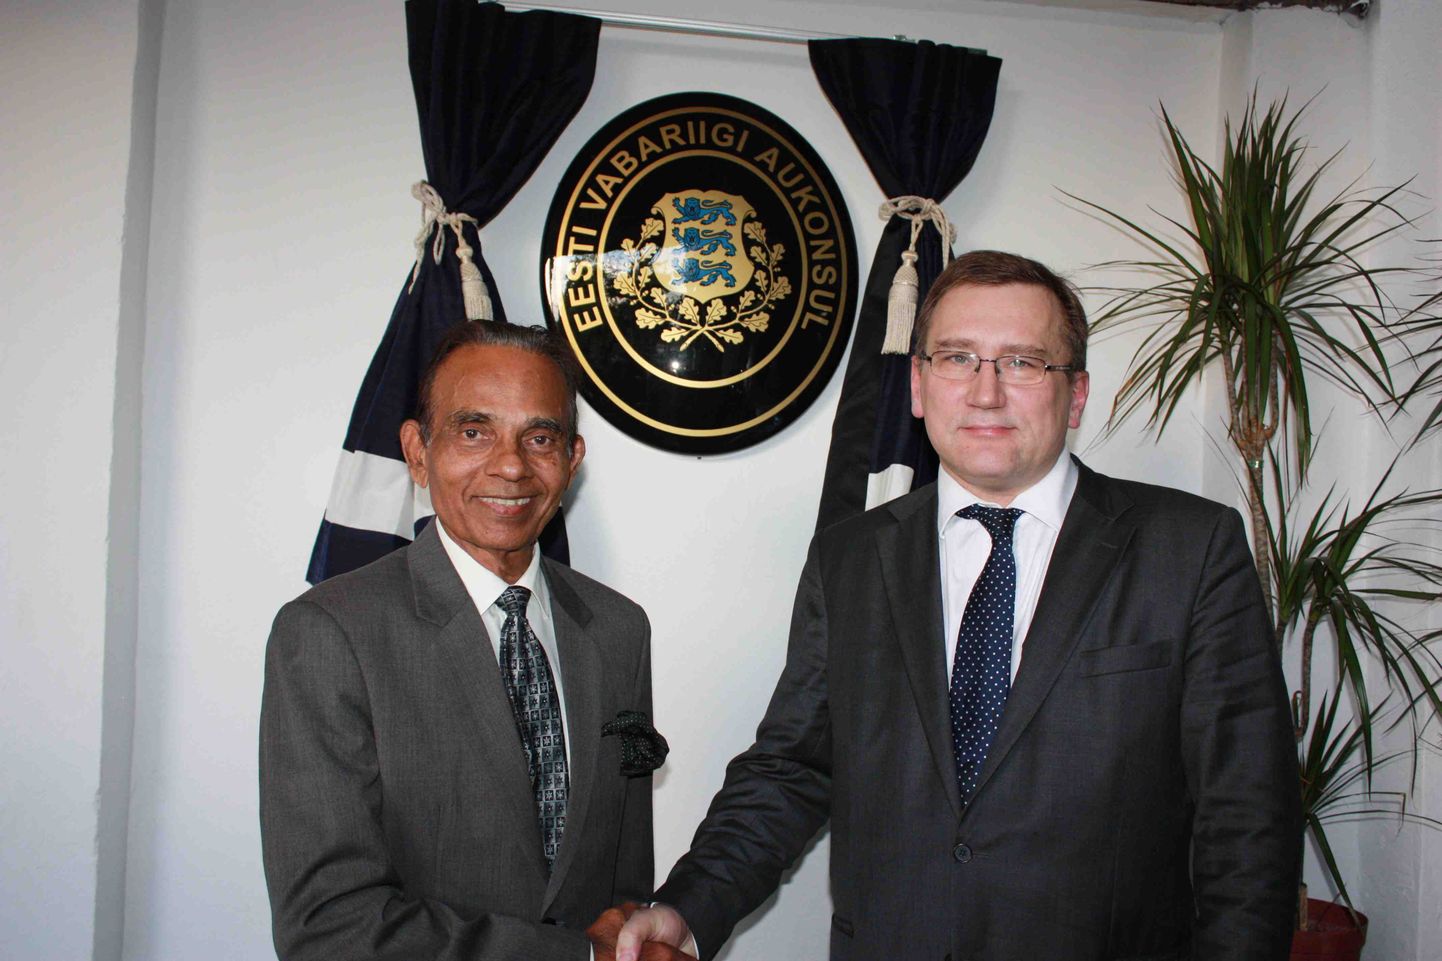 Täna avas majandus- ja kommunikatsiooniminister Juhan Parts Malaisia pealinnas Kuala Lumpuris Eesti aukonsulaadi. Eesti aukonsuliks Malaisias on alates 2011 detsembrist erukolonel Dato Harbans Singh.